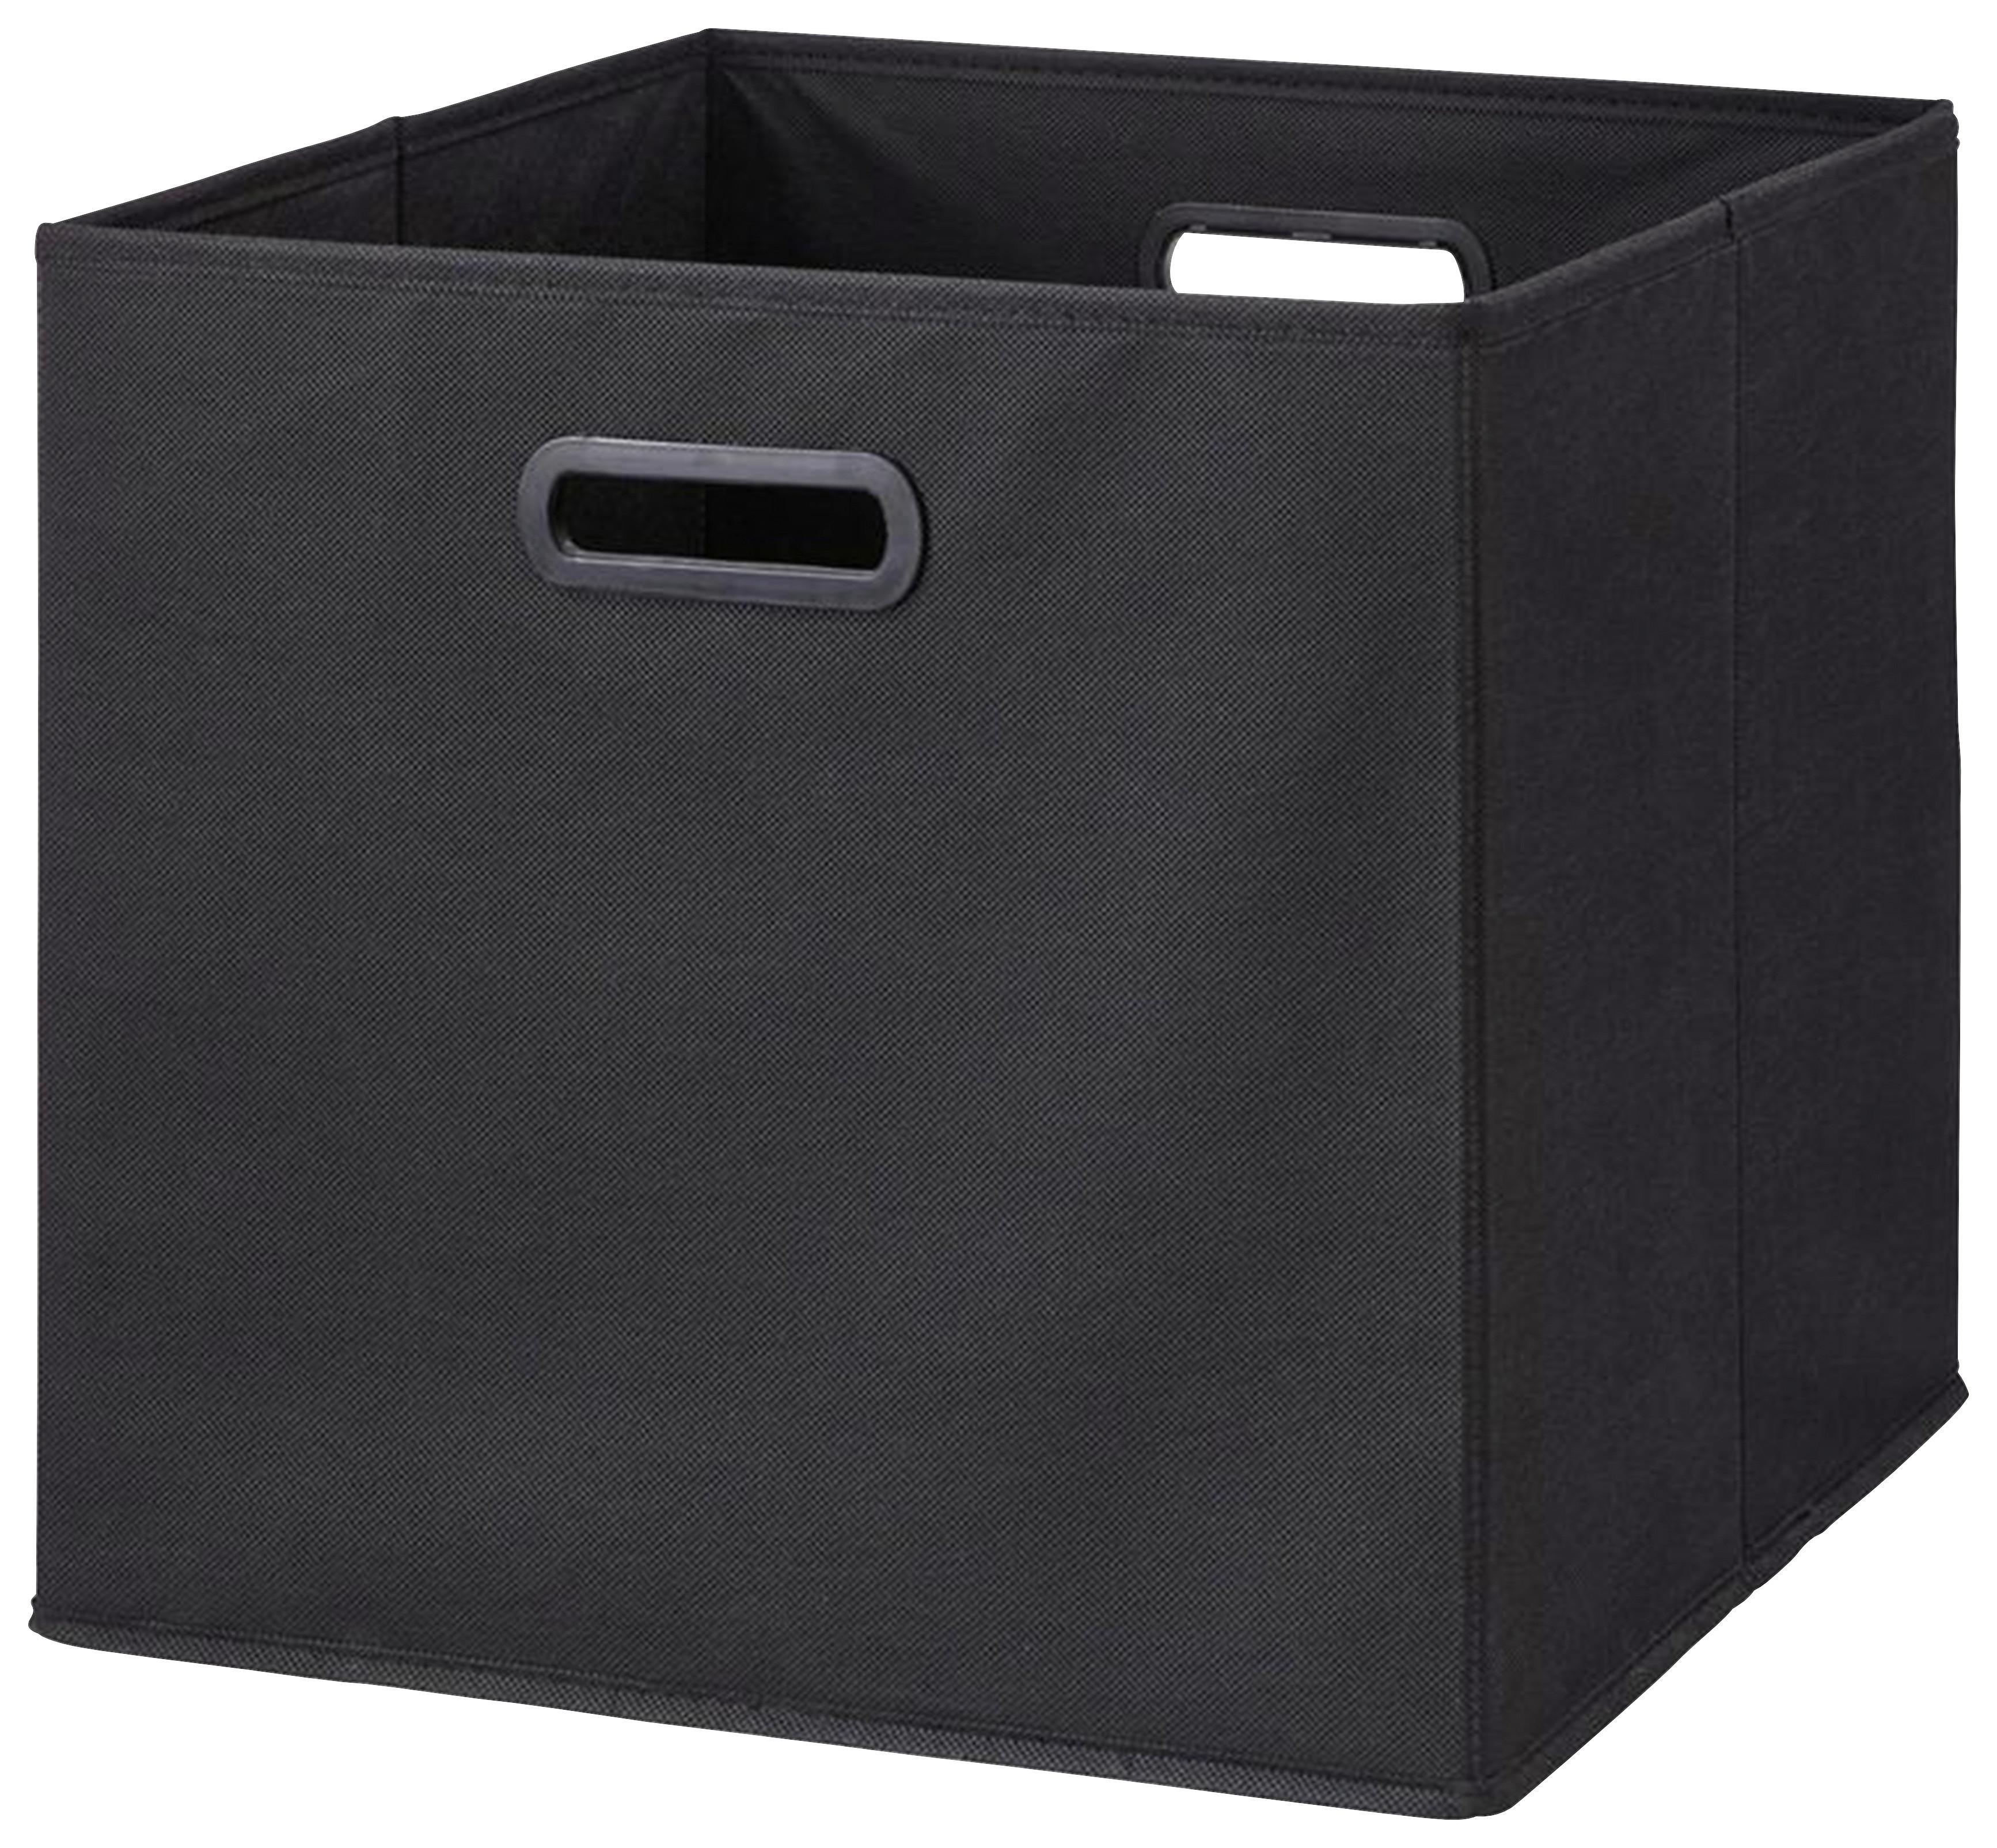 Skladací Box Elli, 33/33/32cm - čierna, Konvenčný, kartón/textil (33/33/32cm) - Modern Living